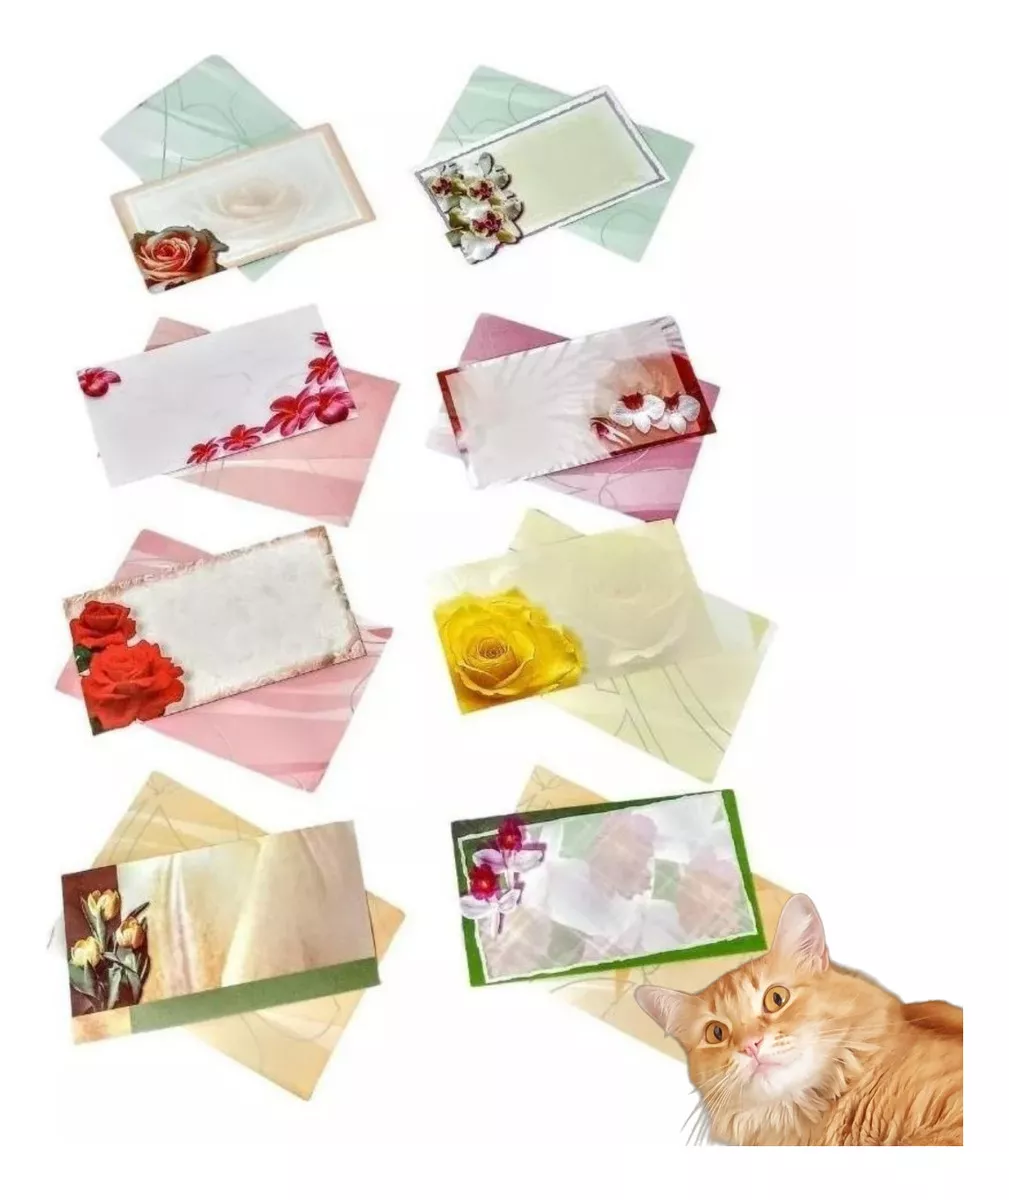 Primeira imagem para pesquisa de mini envelopes coloridos